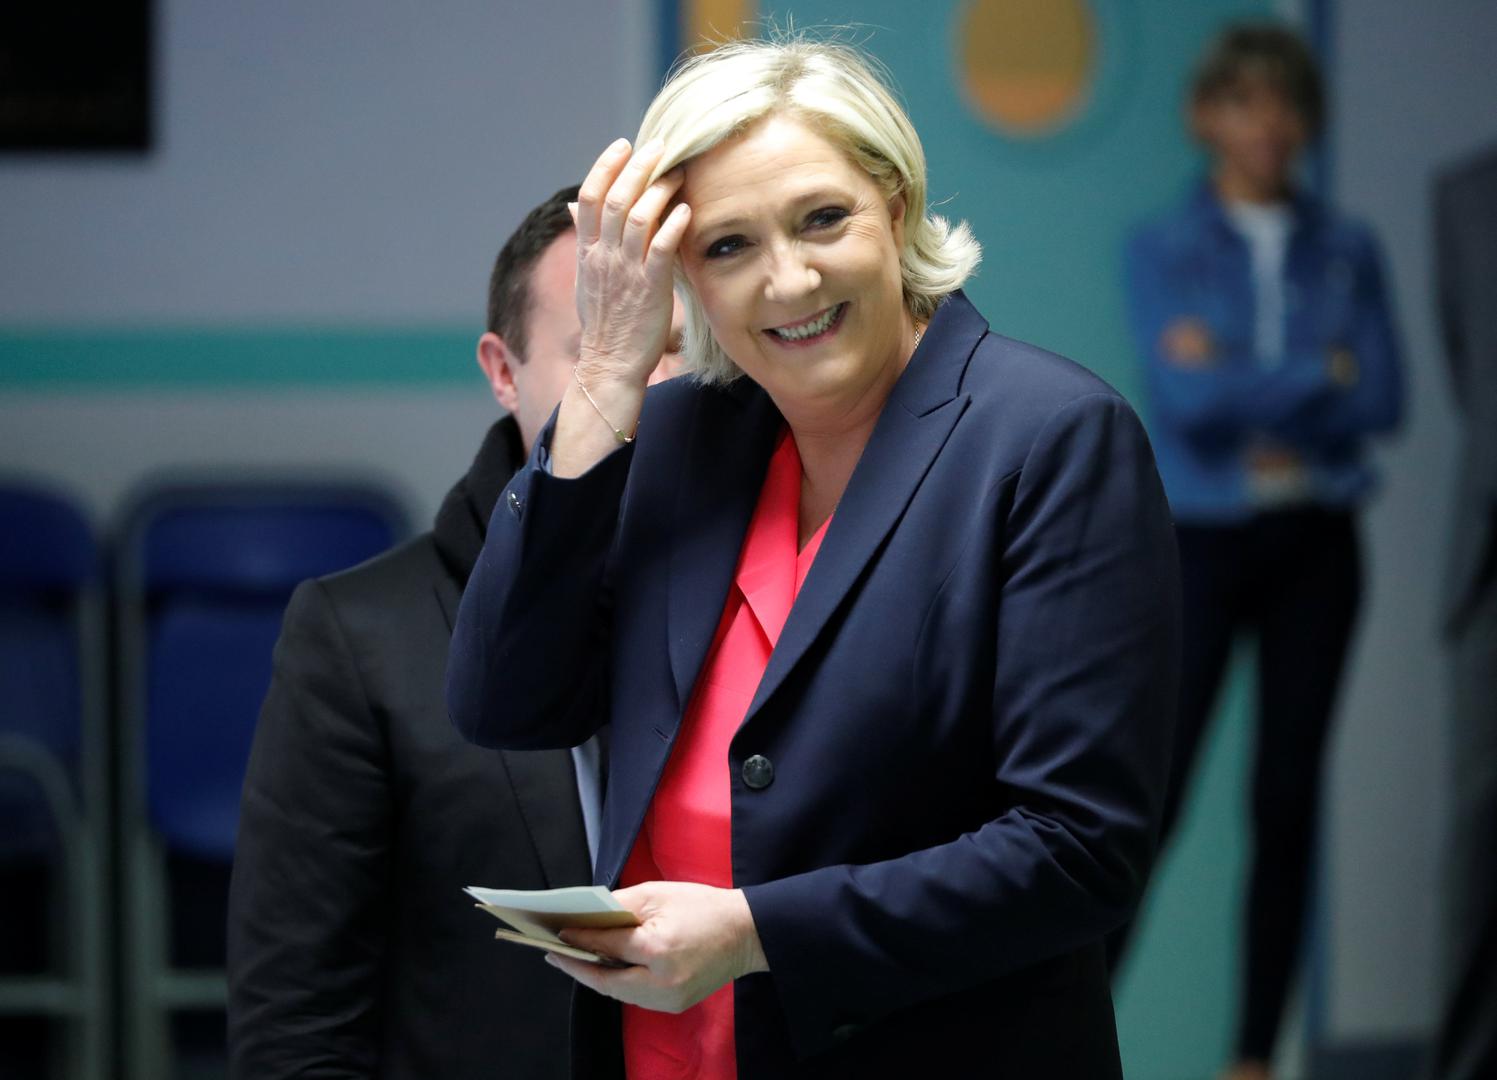 
Marine Le Pen postat će predsjednica Francuske

Marine Le Pen ipak nije postala predsjednica Francuske kao što se predviđalo. Na to je mjesto došao Emmanuel Macron koji je do pobjede na izborima došao u drugom krugu. Pobjeda je bila uvjerljiva s 66,1% osvojenih glasova dok je Le Pen osvojila 33,9%. 
U prvom krugu Macron je imao 2,7% glasova više od Le Pen.